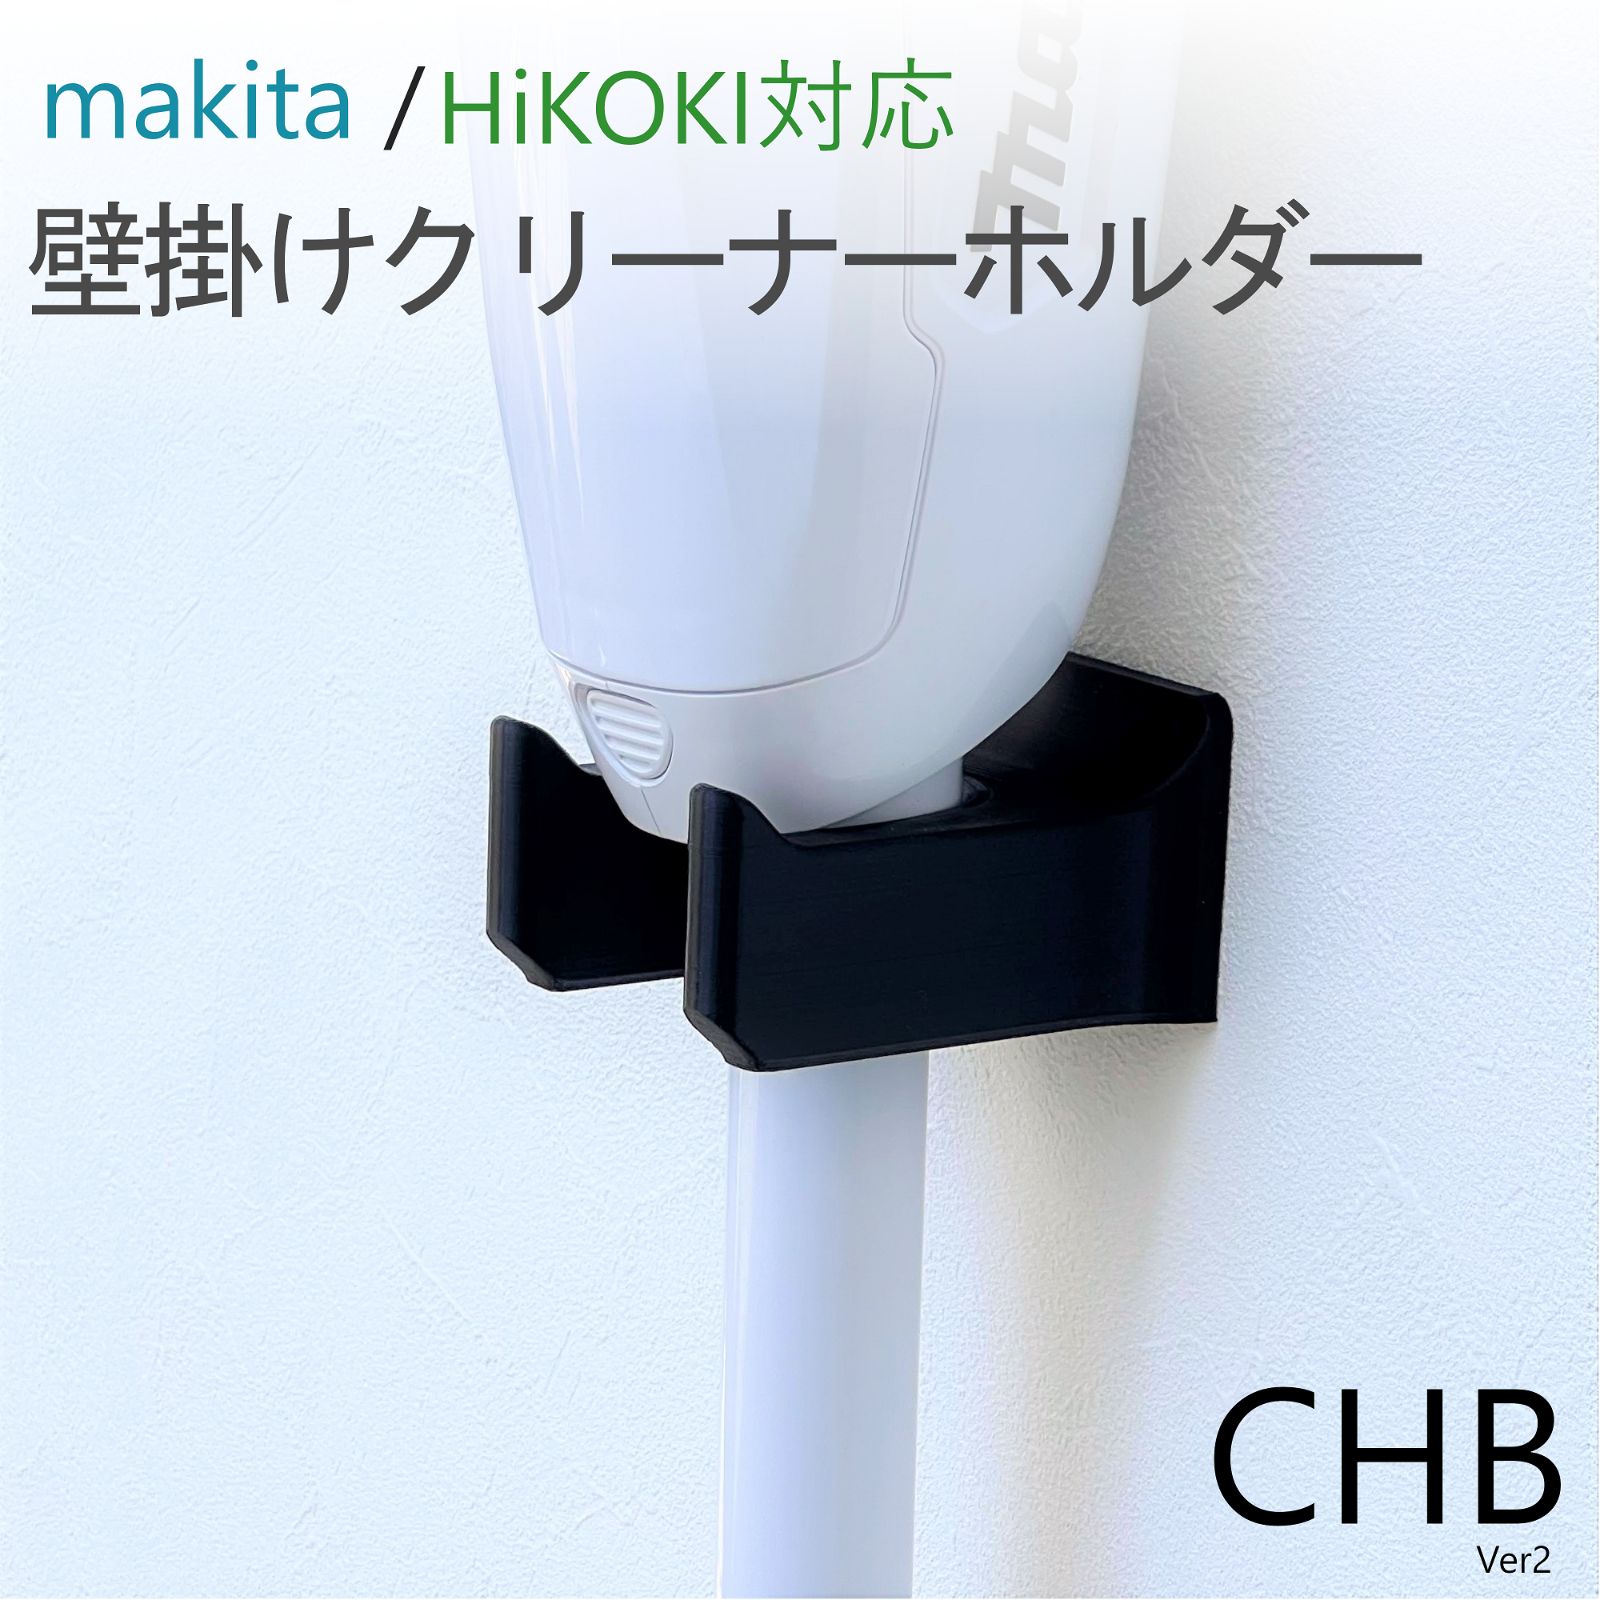 クリーナーホルダー ( マキタ ハイコーキ ) [CHB] CL282FD 等